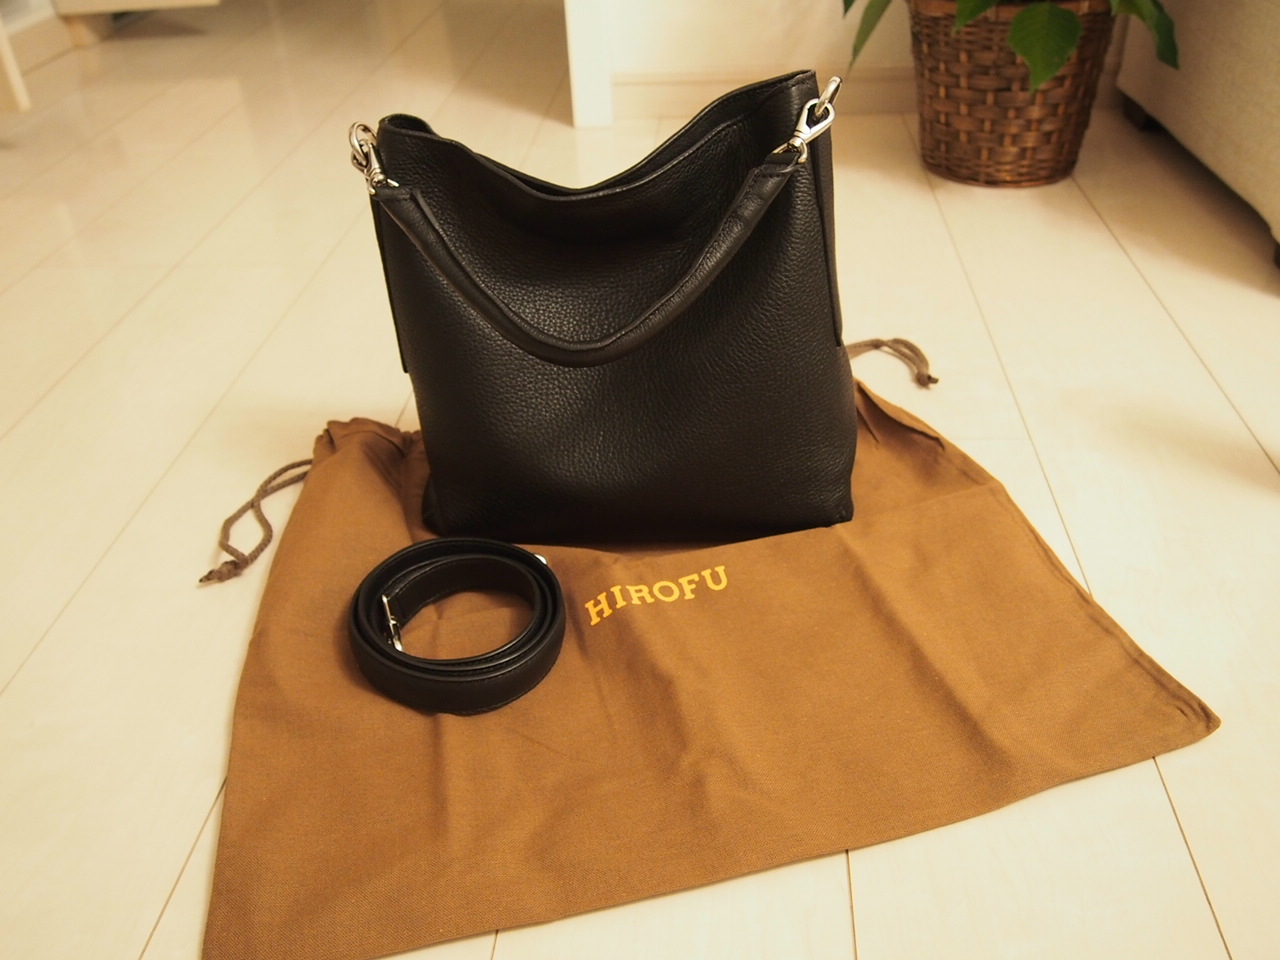 HIROFUのバッグを買いました。 エリーのシングルライフ